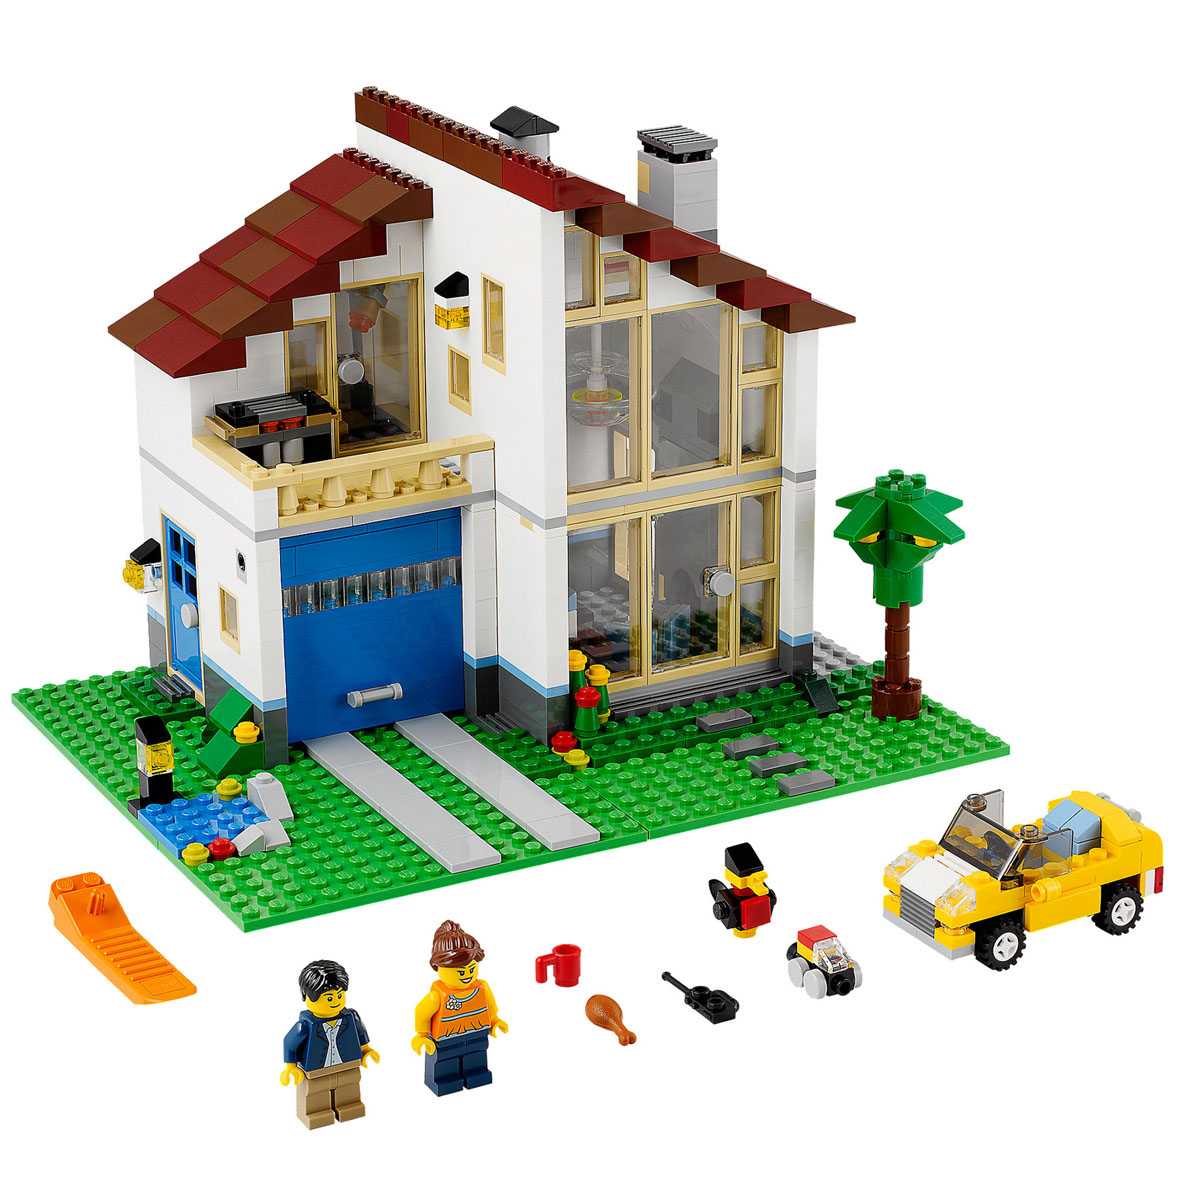 Lego Old Fishing Store nhà cổ làng chài có gì đặc biệt mua ở đâu